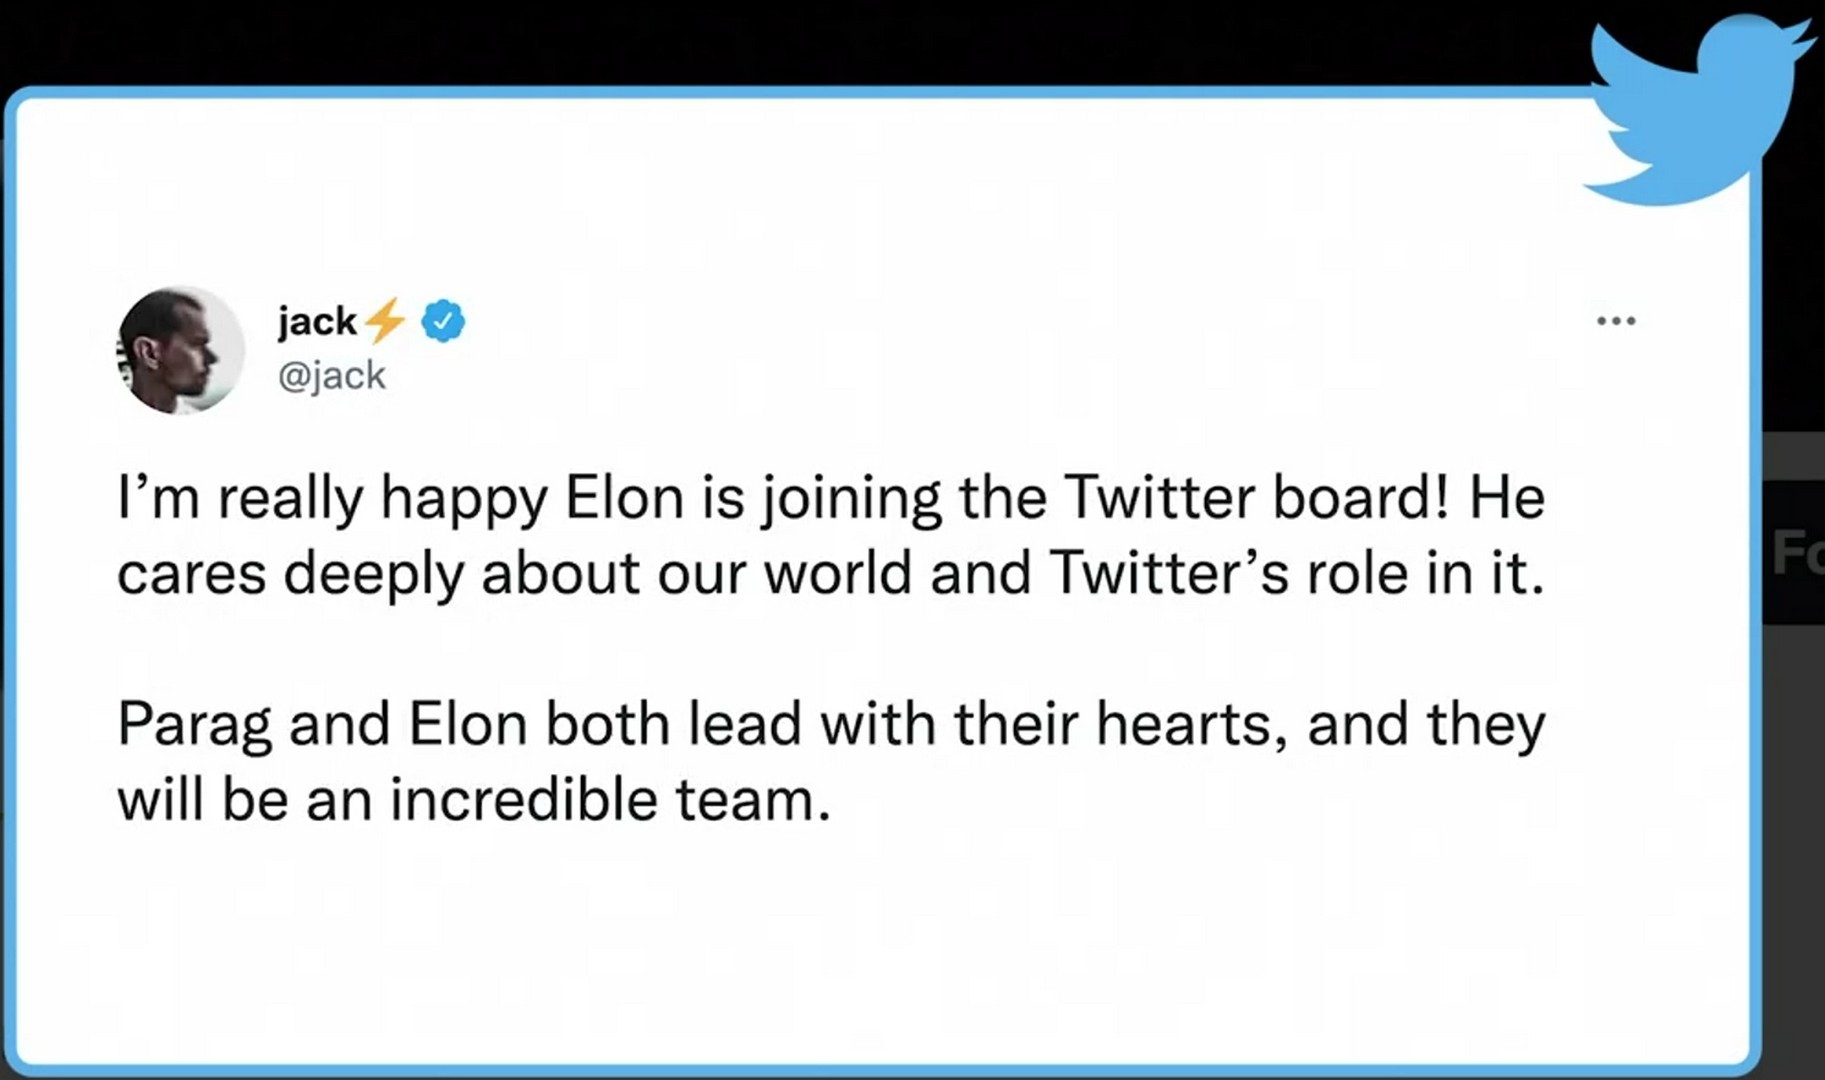 تغريدة جاك دوروسي مؤسس تويتر يرحب بإيلون ماسك